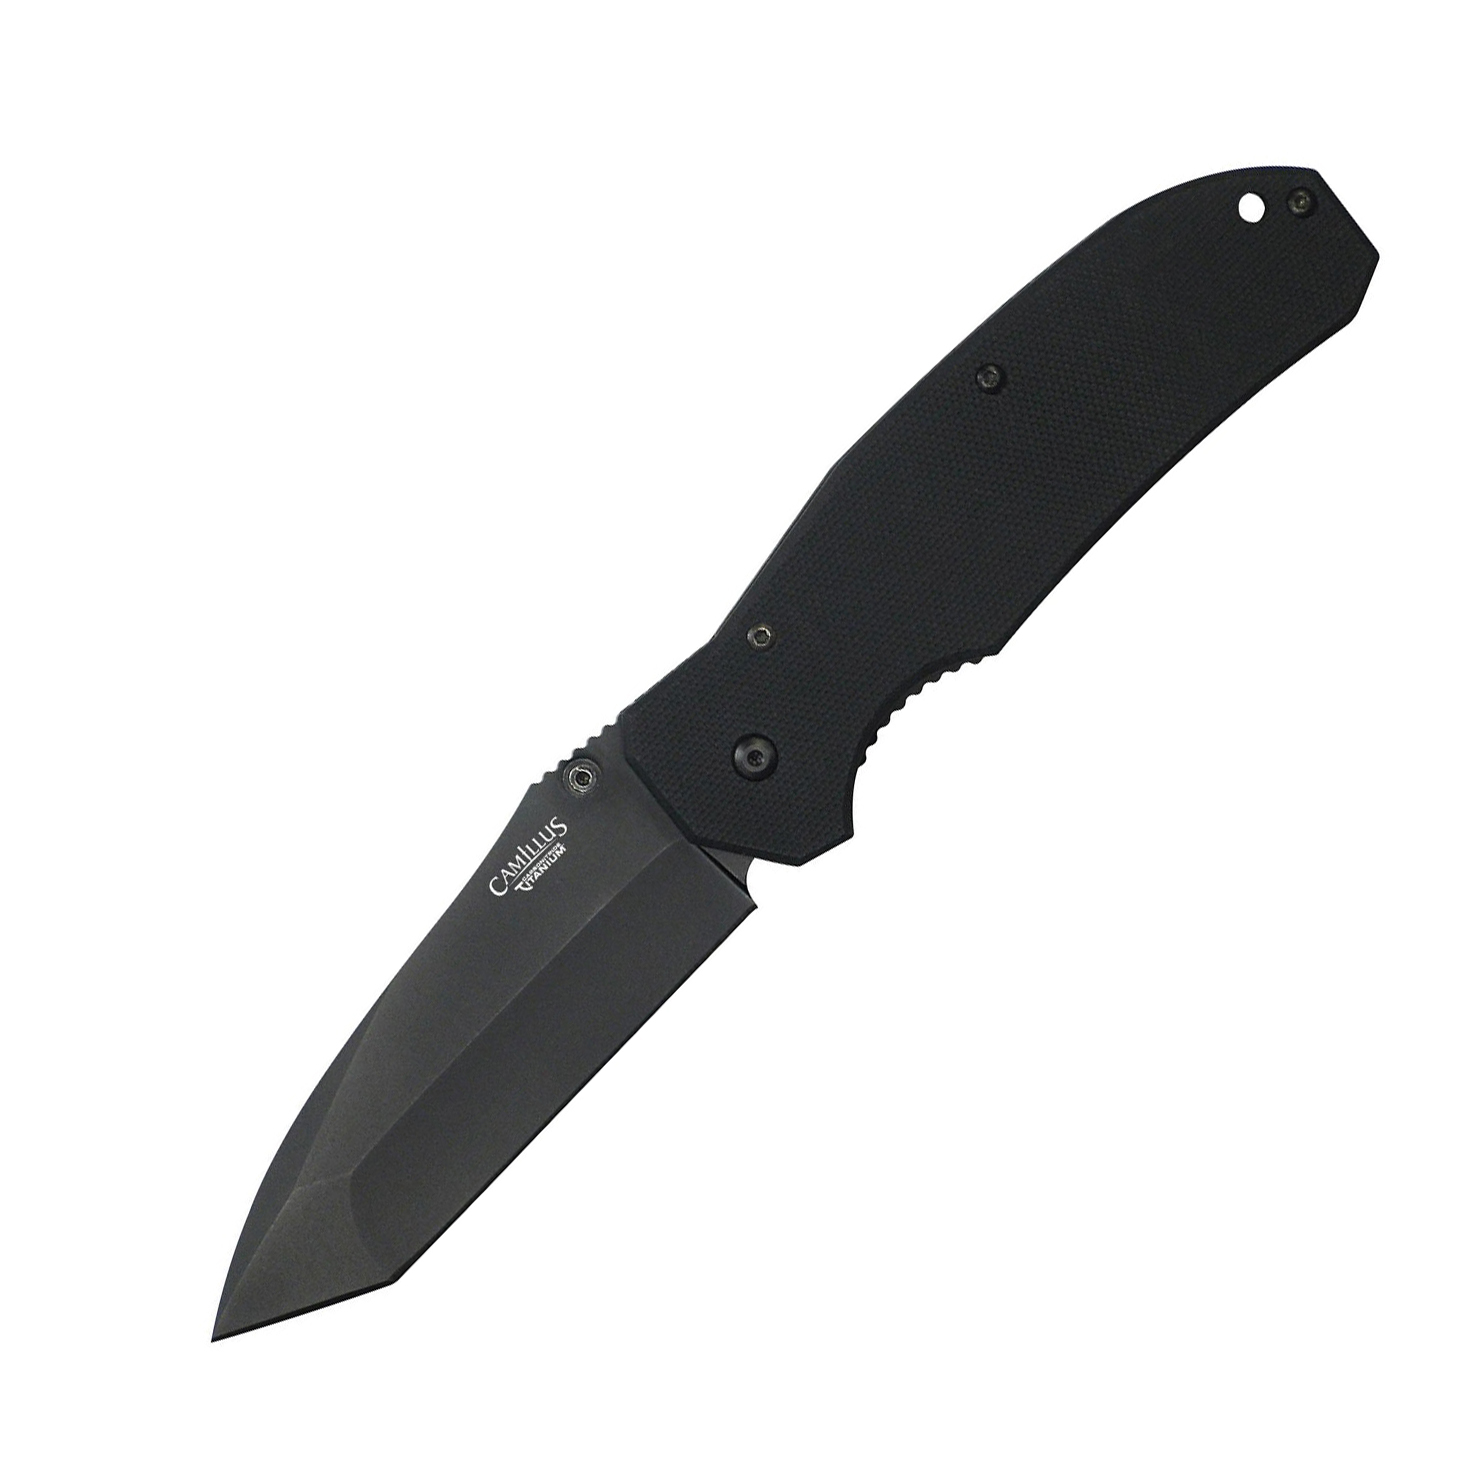 Нож складной Camillus Tanto, сталь VG-10, рукоять стеклотекстолит G-10, чёрный нож складной hogue ex 04 upswept сталь 154cm рукоять стеклотекстолит g mascus® чёрный